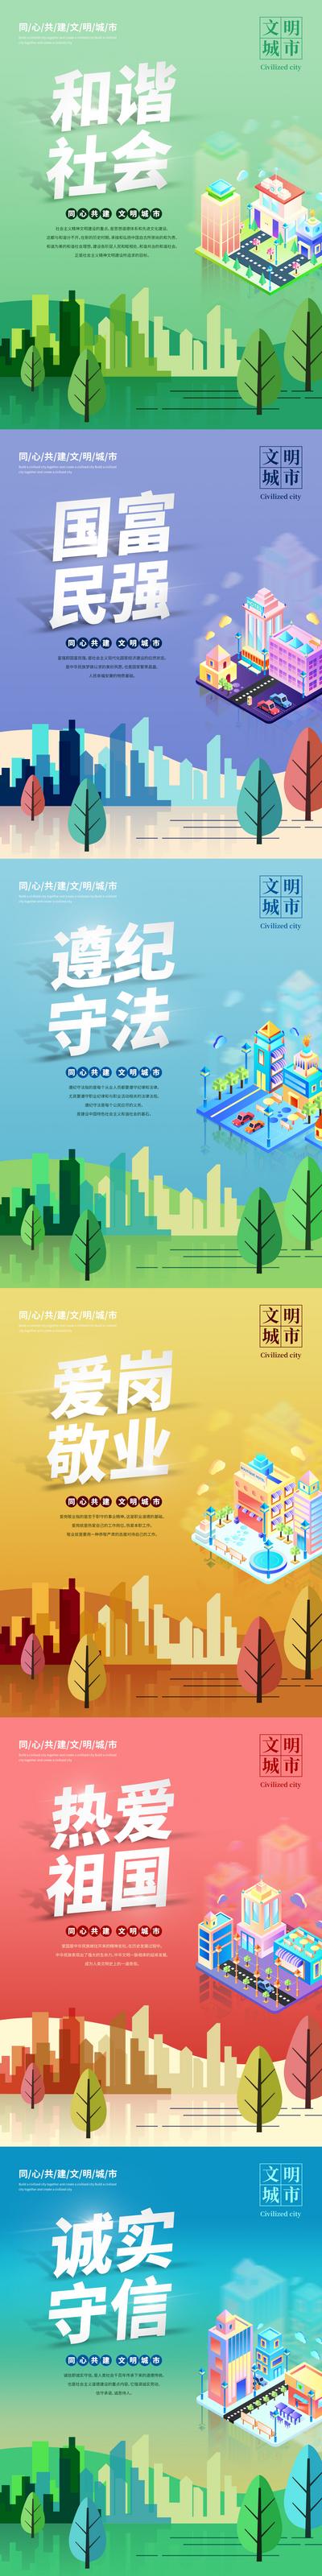 南门网 海报 社会主义核心价值观 文明城市 插画 扁平风